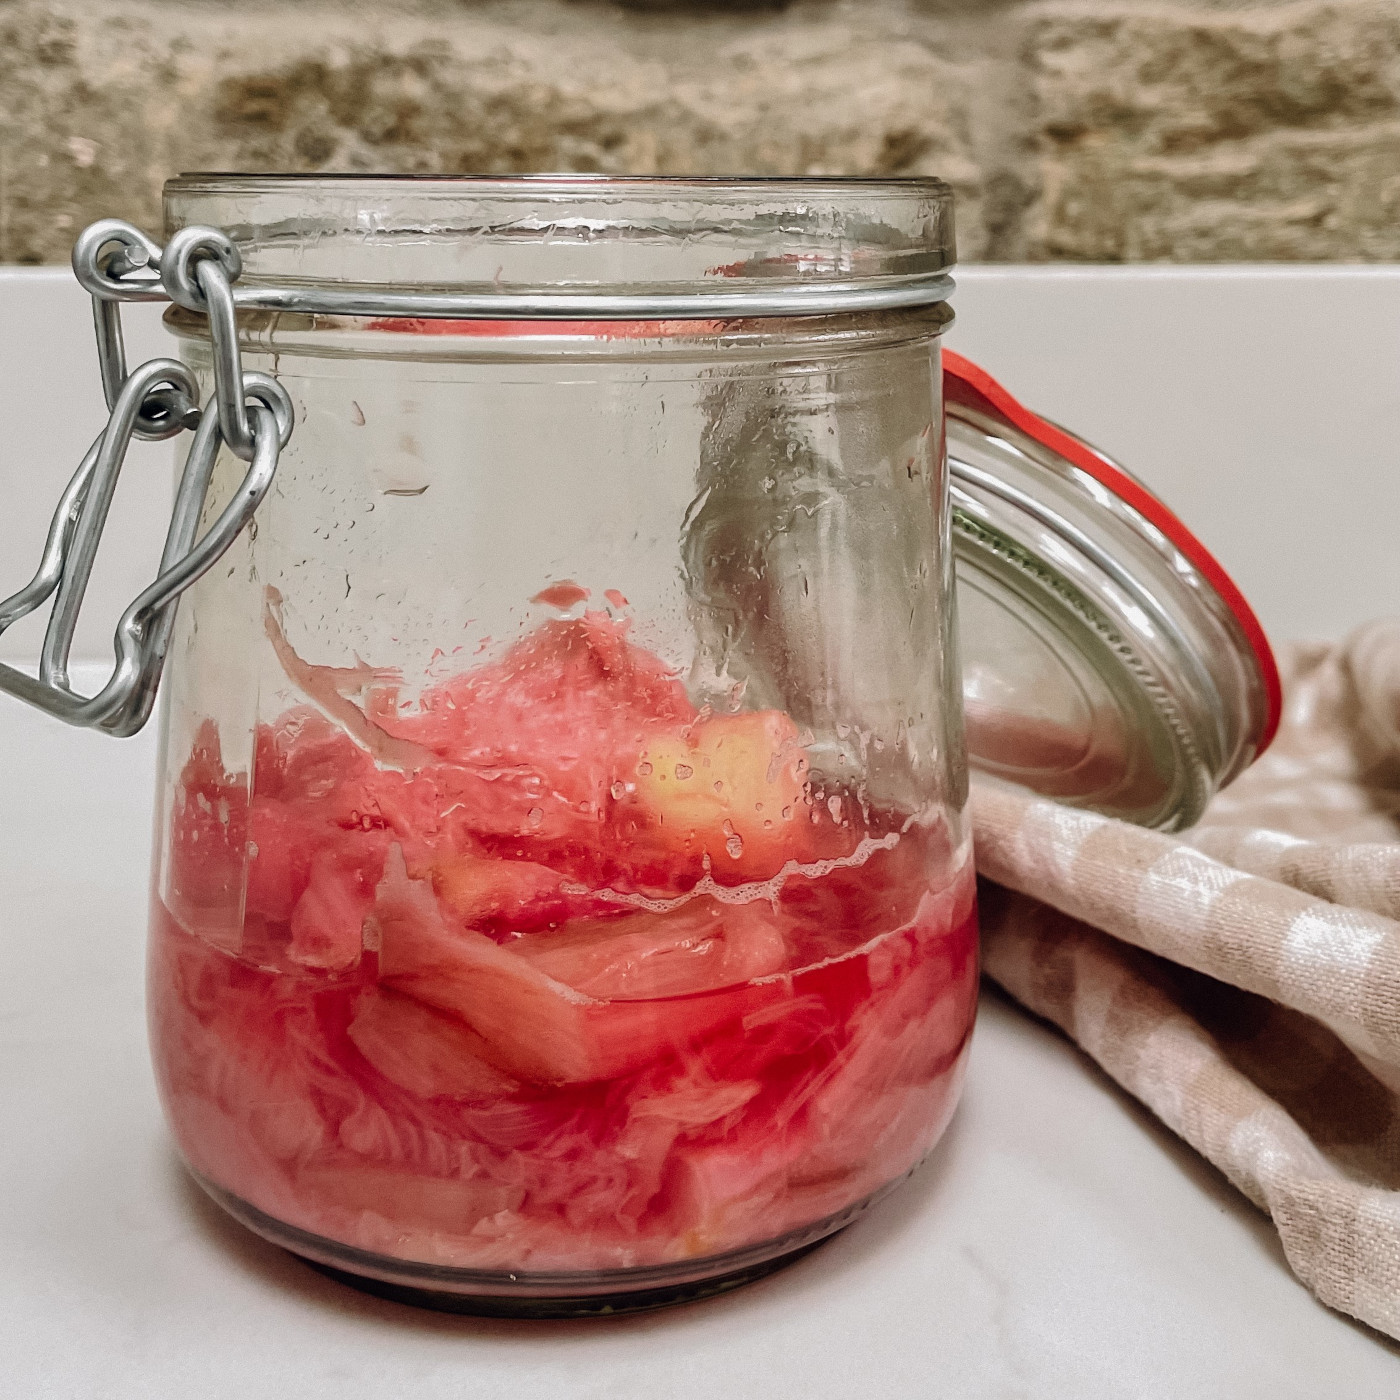 Stewed forced rhubarb in a jar